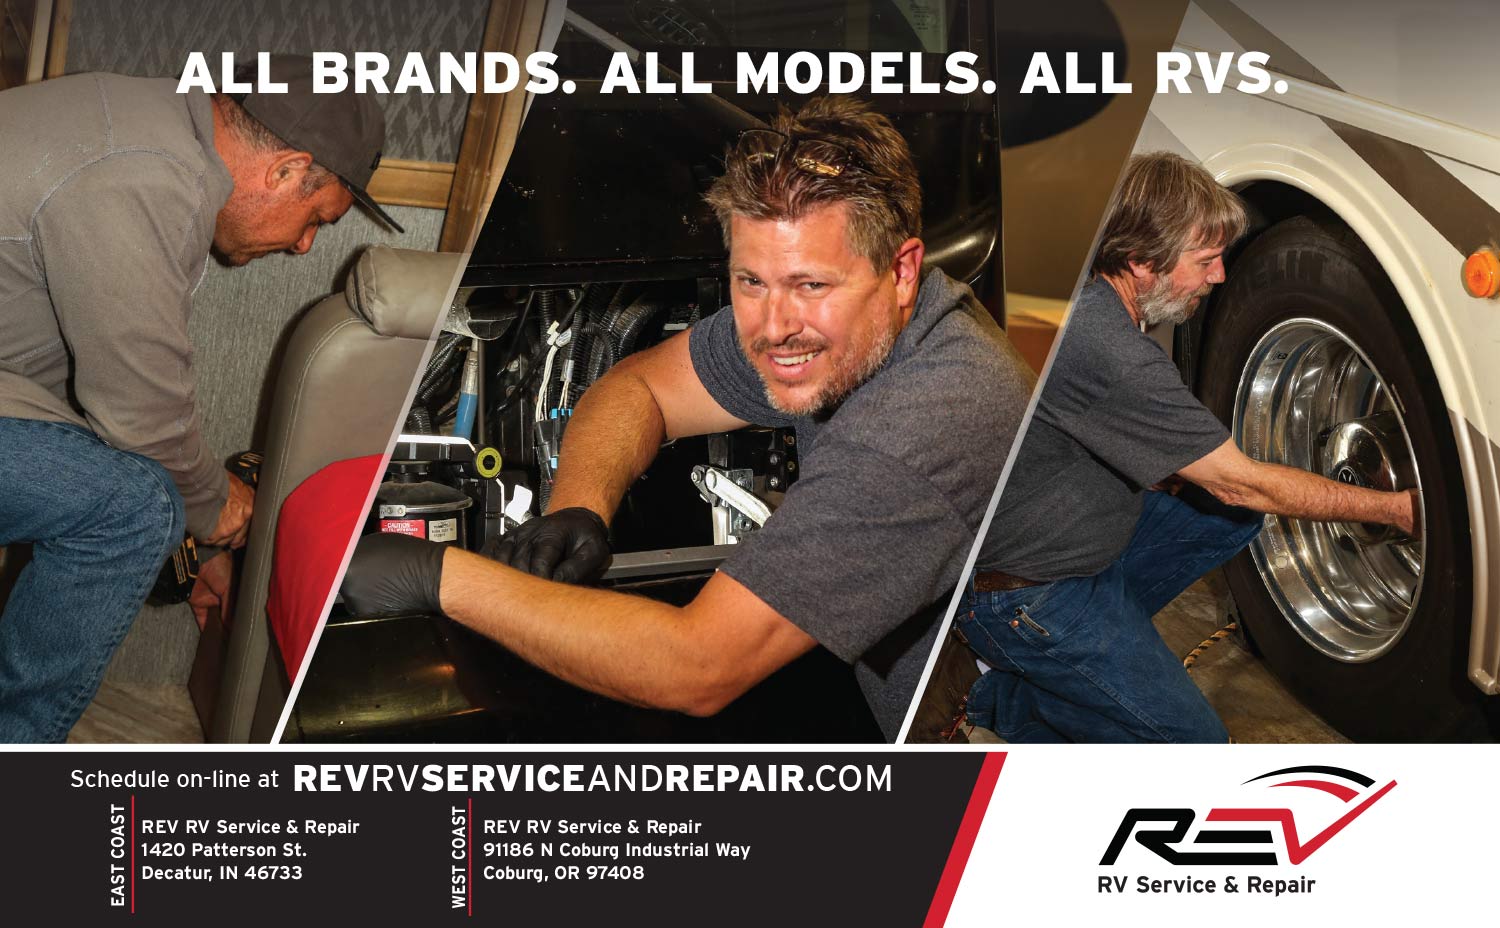 REV Service & Repair Advertisement